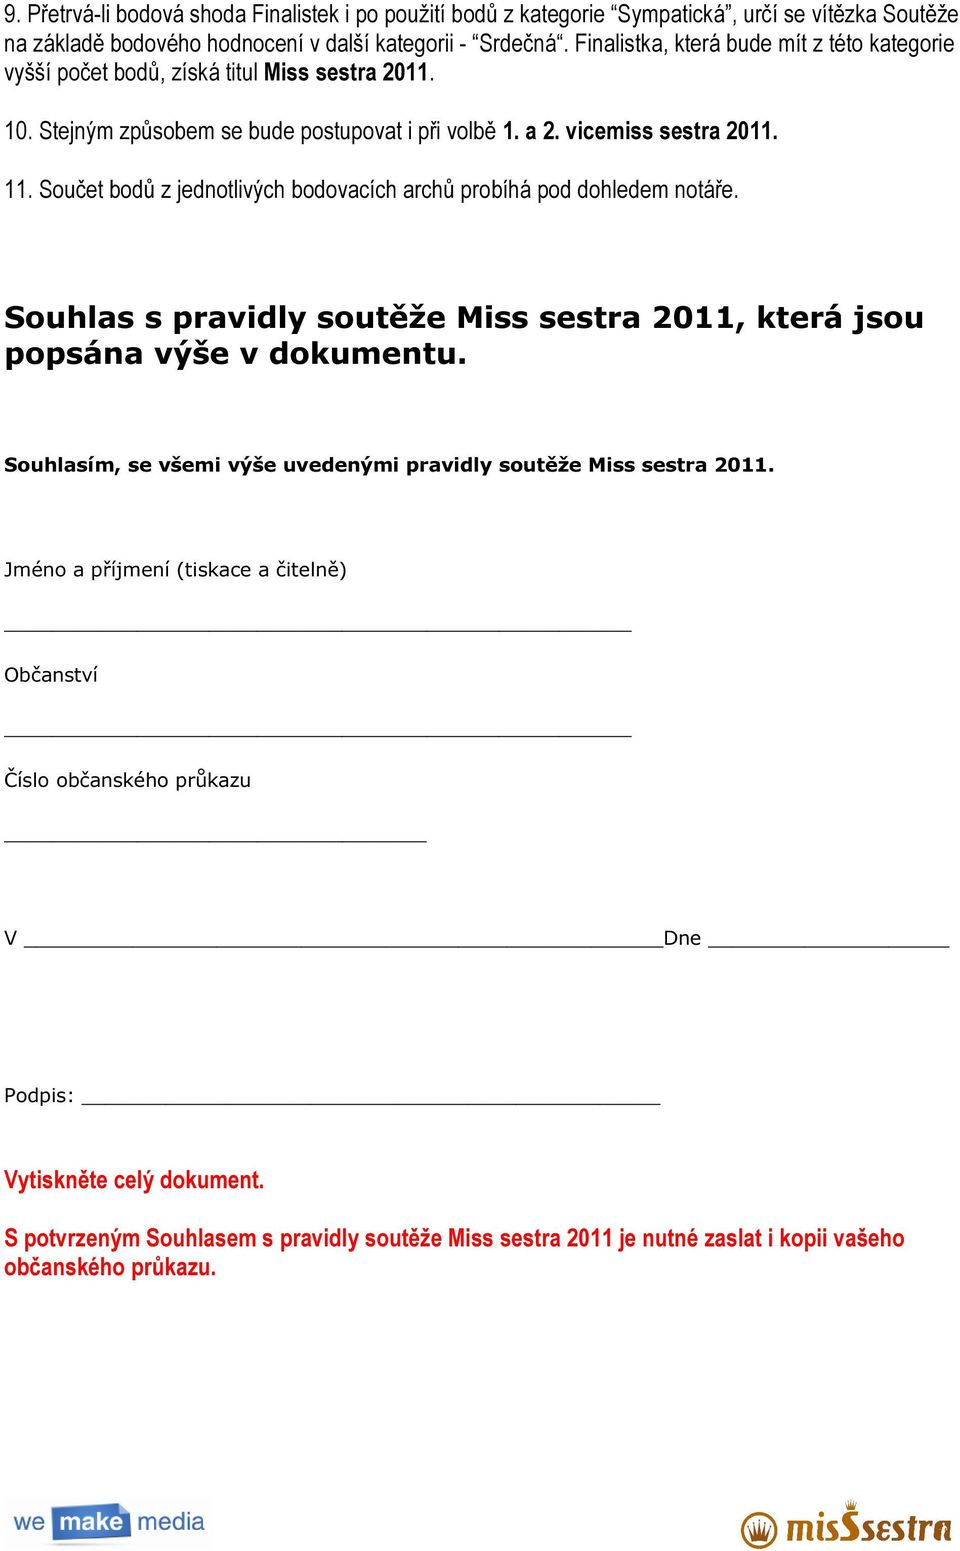 Součet bodů z jednotlivých bodovacích archů probíhá pod dohledem notáře. Souhlas s pravidly soutěže Miss sestra 2011, která jsou popsána výše v dokumentu.